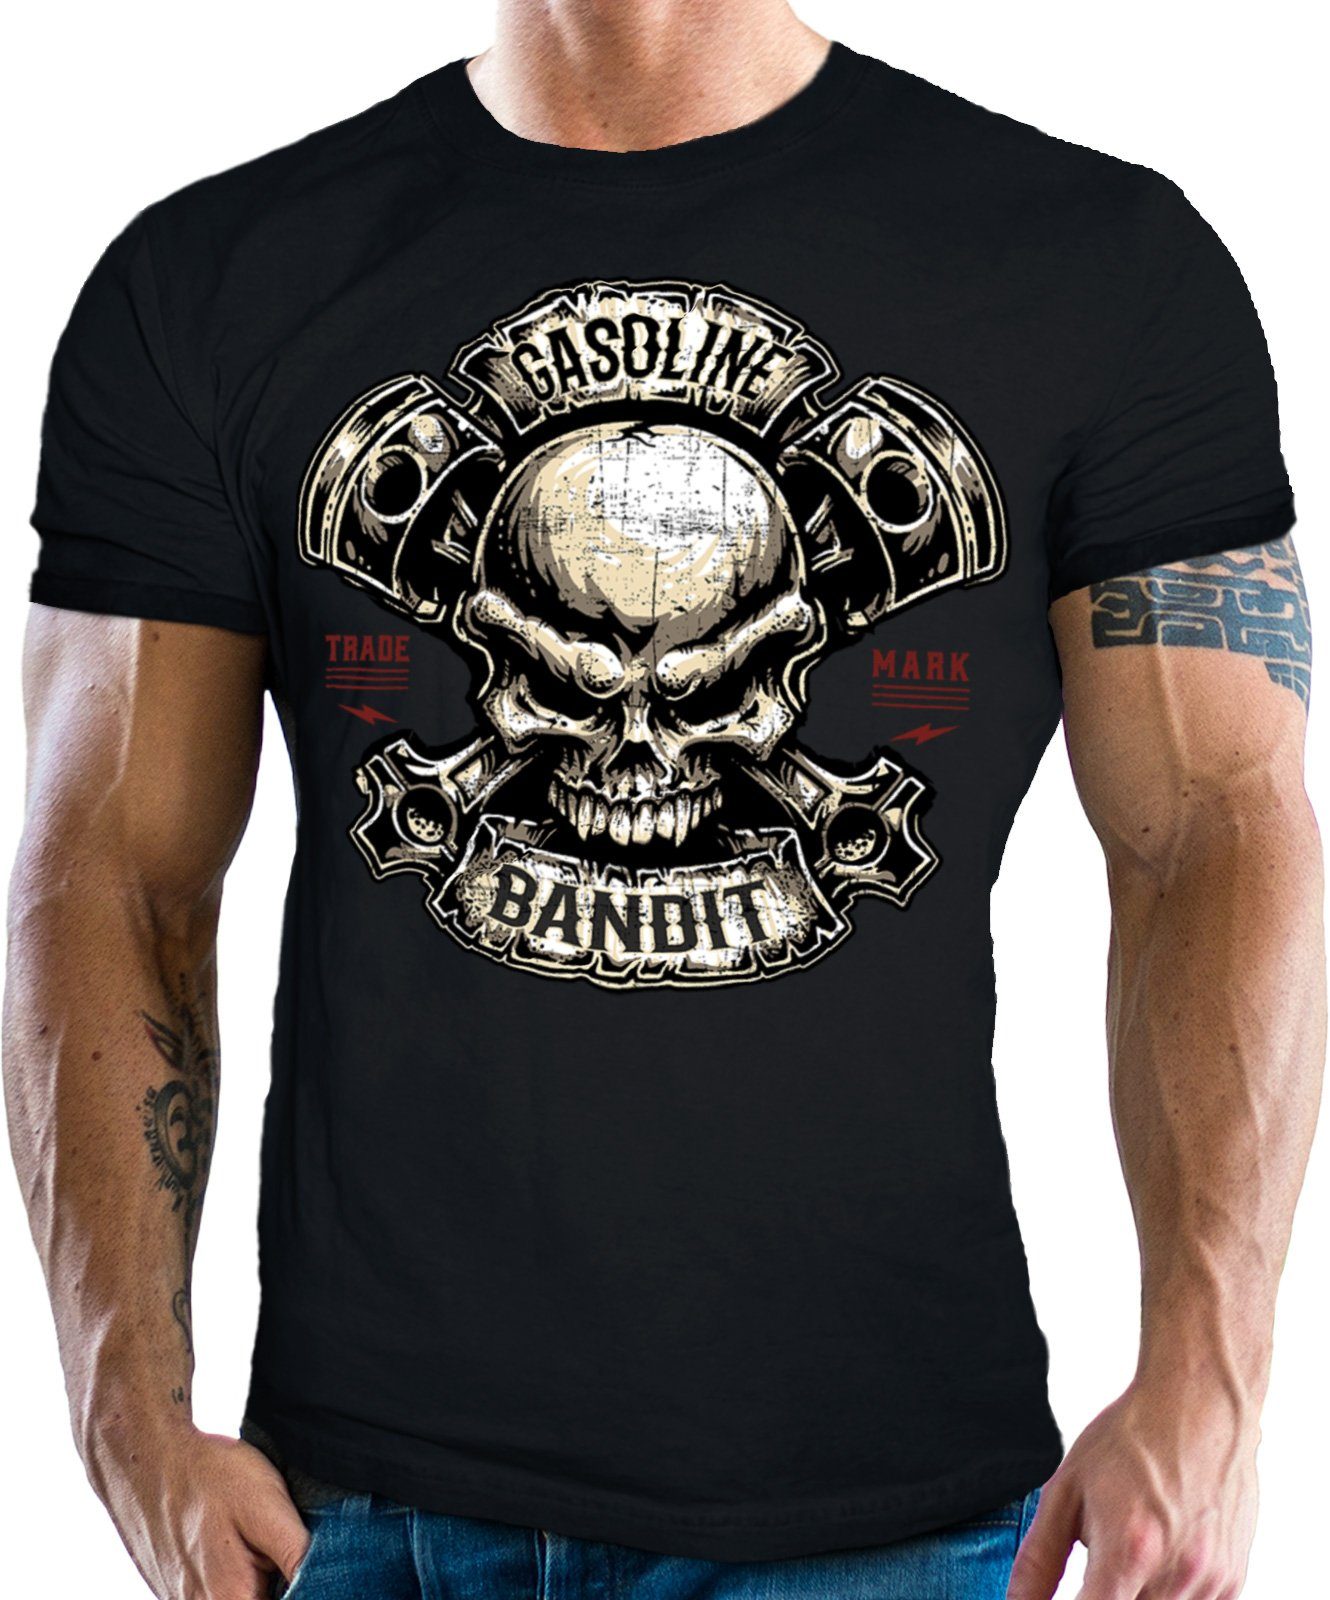 GASOLINE BANDIT® T-Shirt in schwarz für Biker Racer Fans: Piston Skull